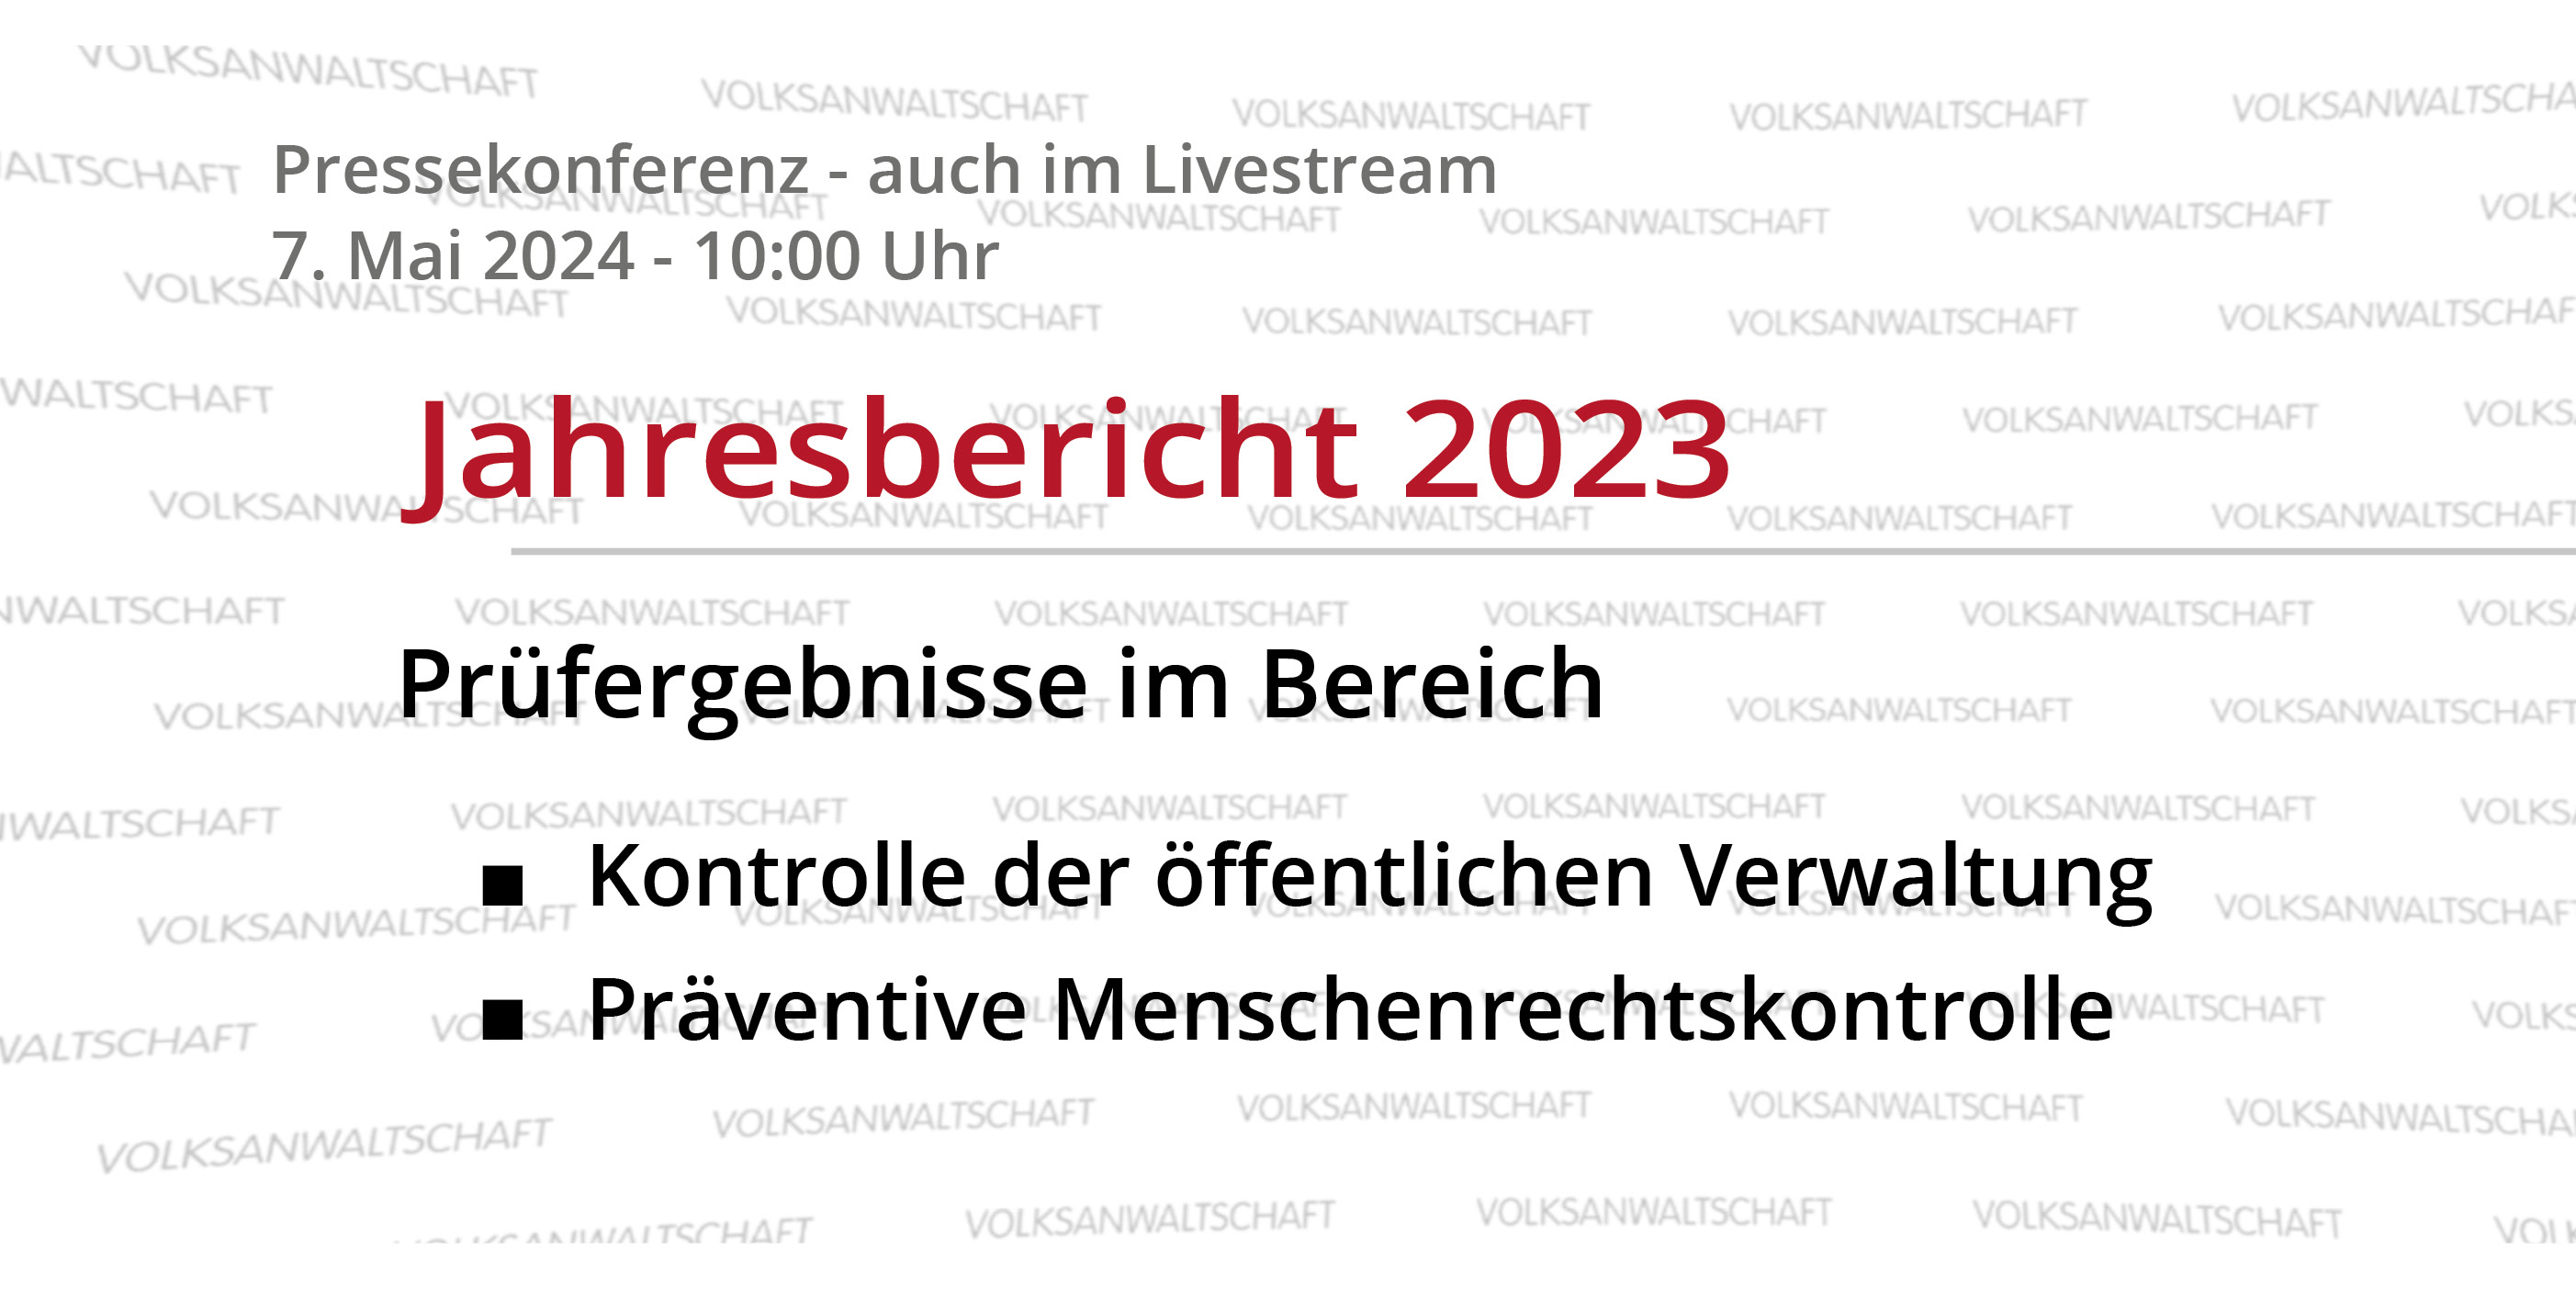 Pressekonferenz - auch im Livestream 7. Mai 2024 - 10:00 Uhr - Jahresbericht 2023: Prüfergebnisse im Bereich Kontrolle der öffentlichen Verwaltung und Präventive Menschenrechtskontrolle